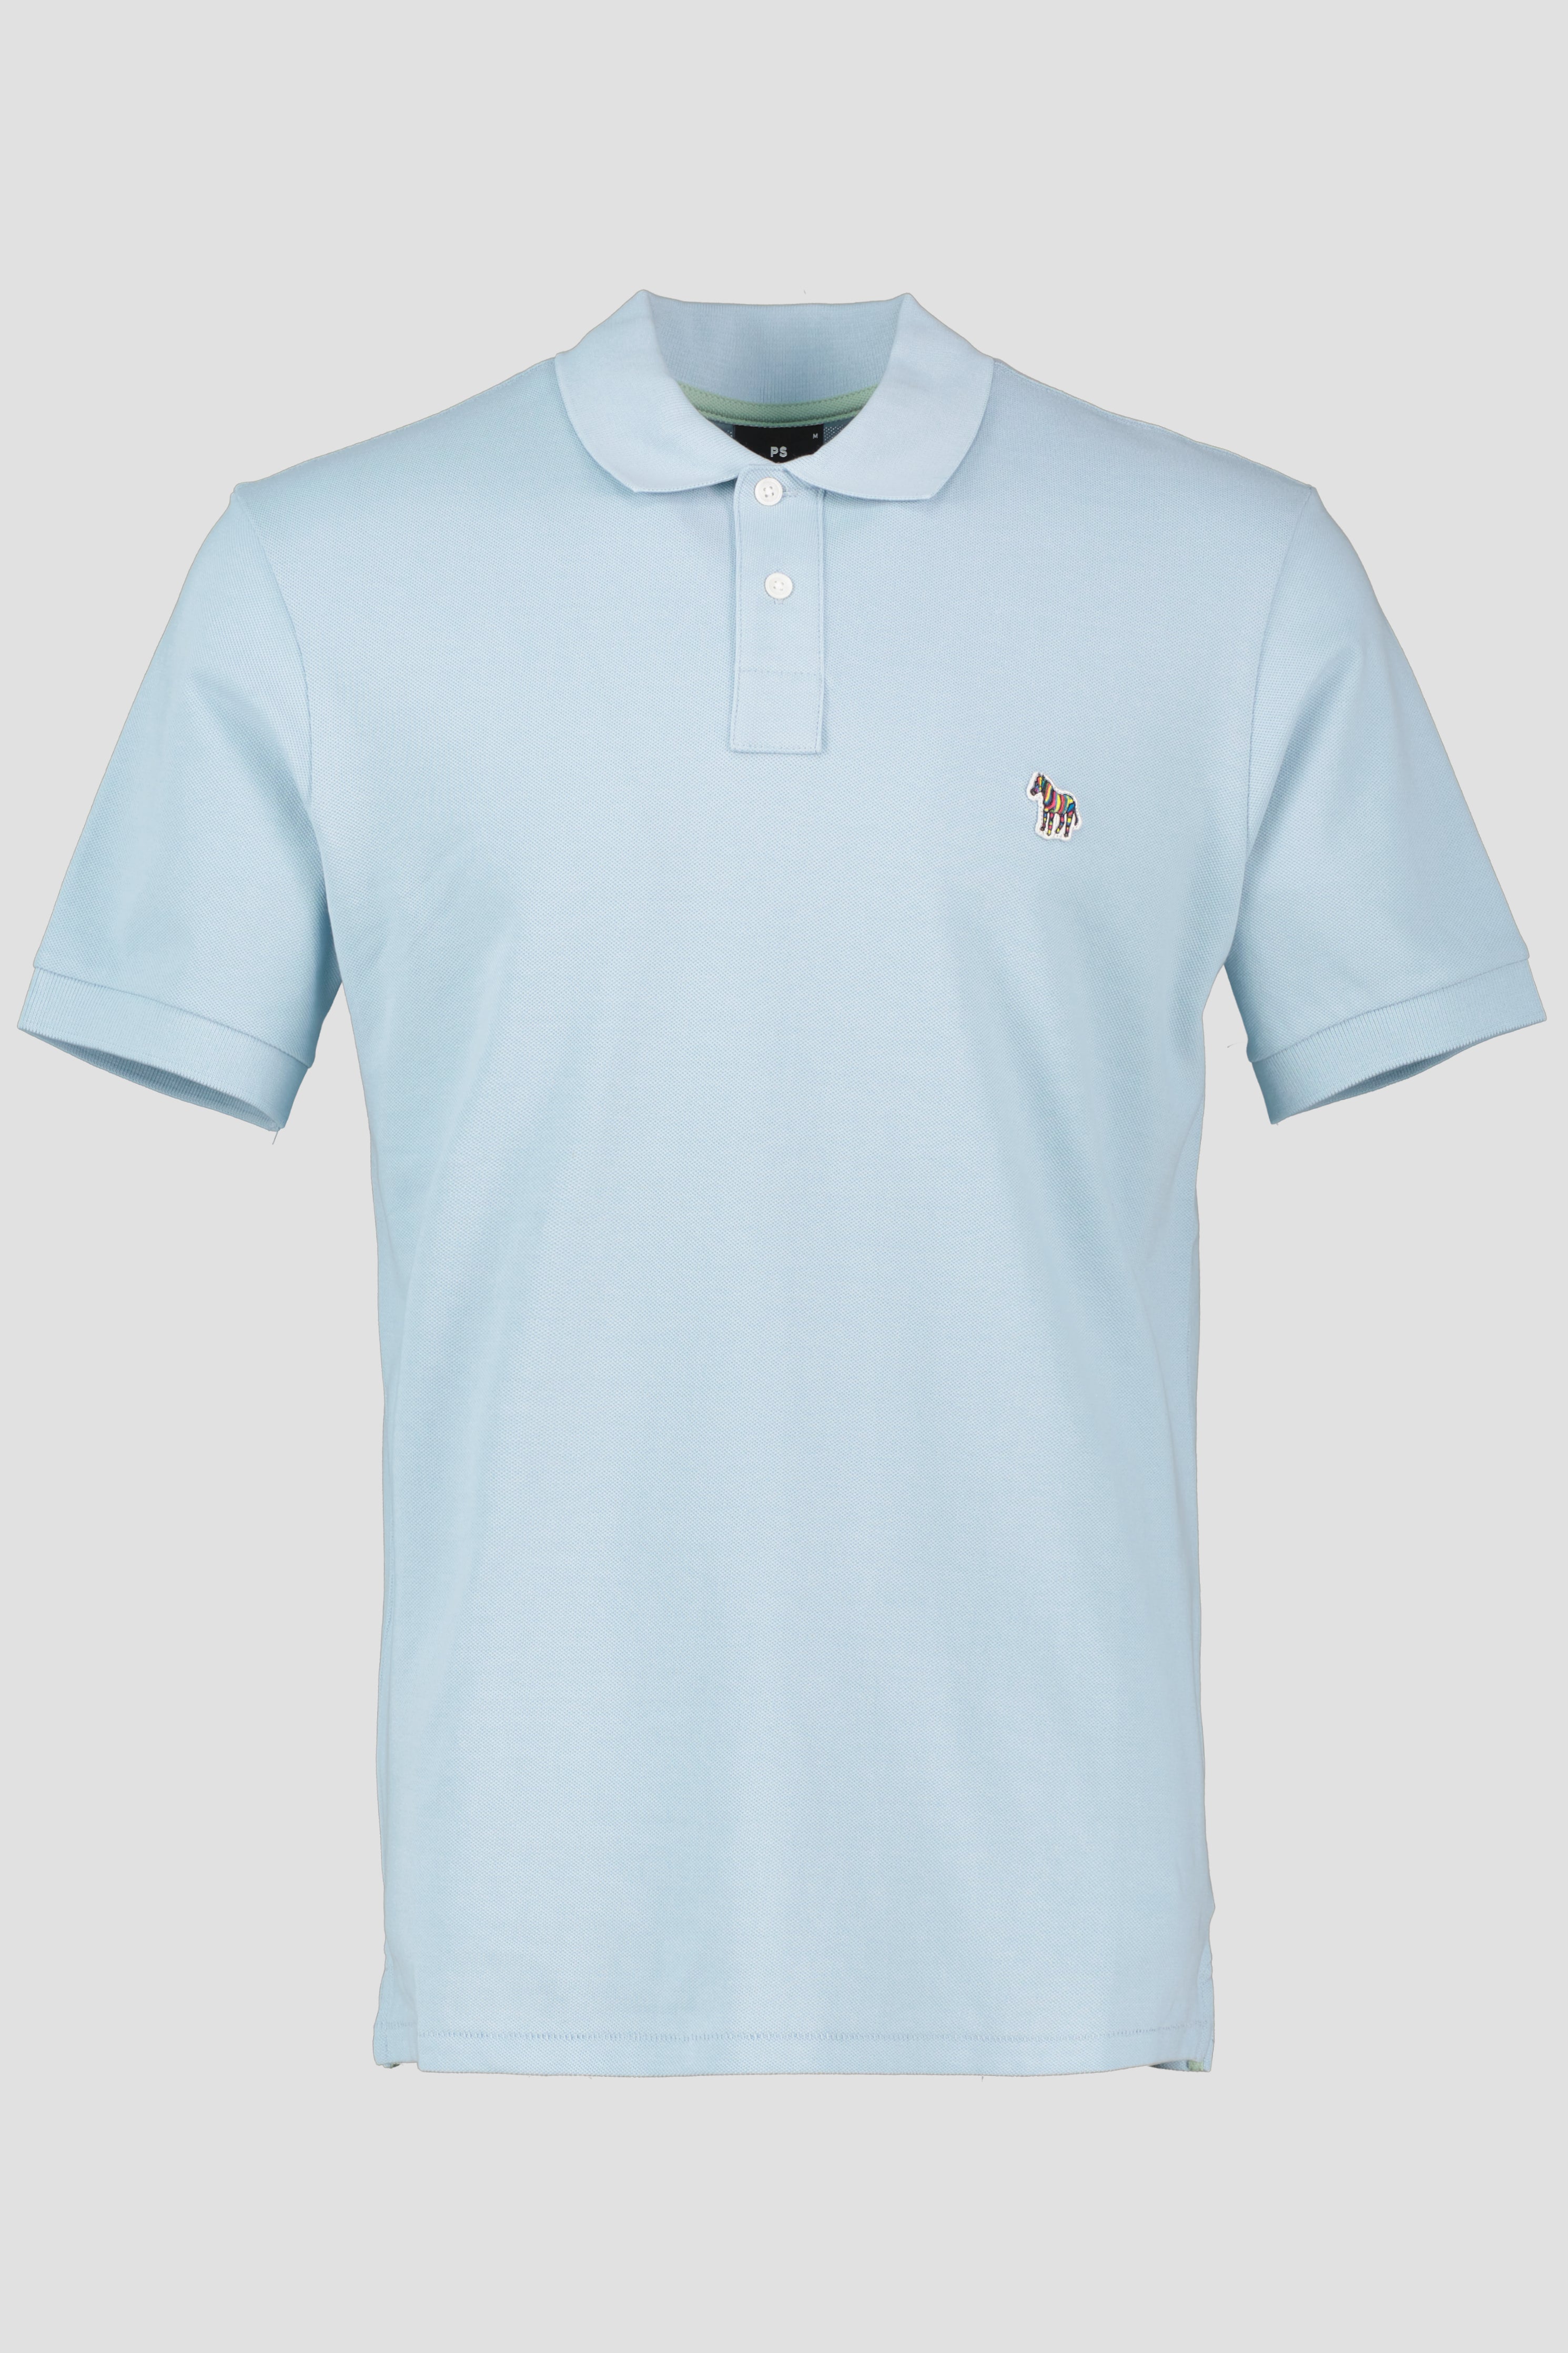 Men's Paul Smith Light Blue Short Sleeve Zebra Badge Polo Shirt